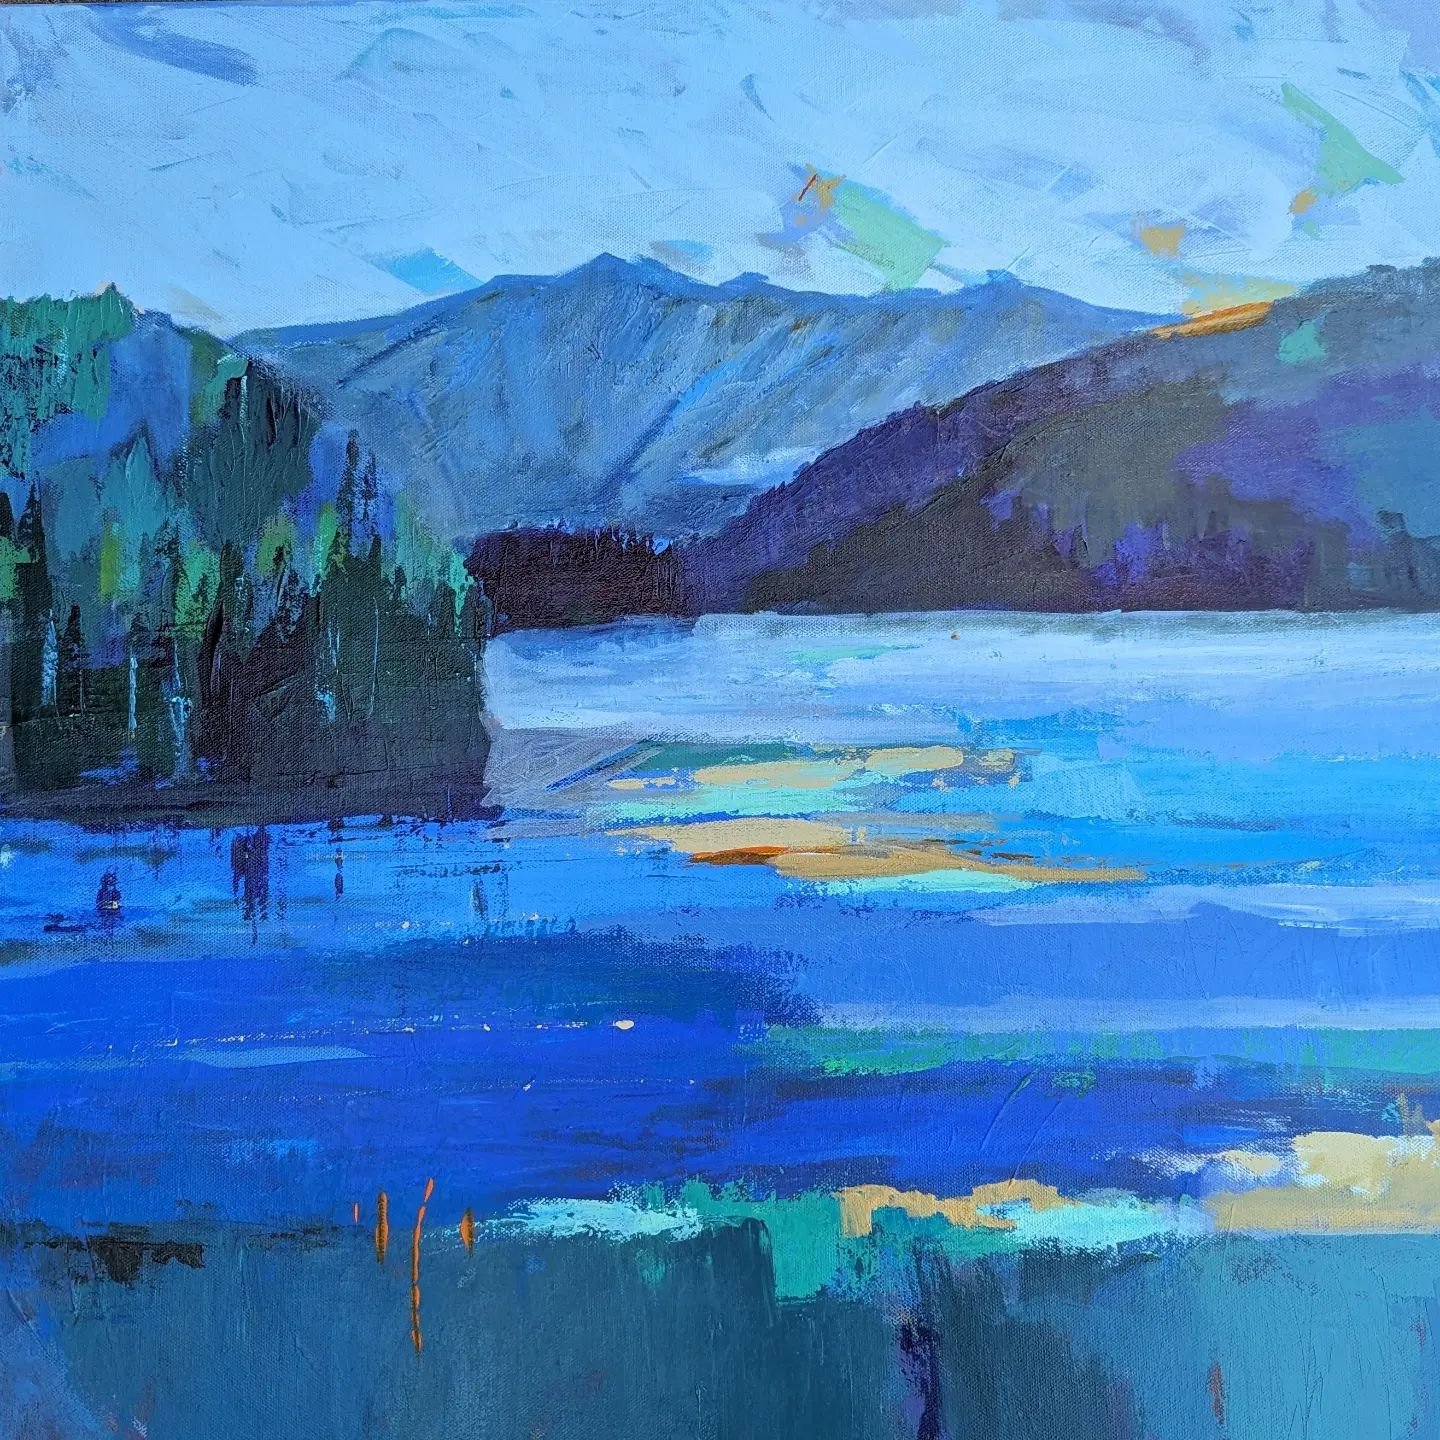 Pitt Lake British Columbia

#stephaniemacleanartist #pittlakebc #landscapepainting #colorist